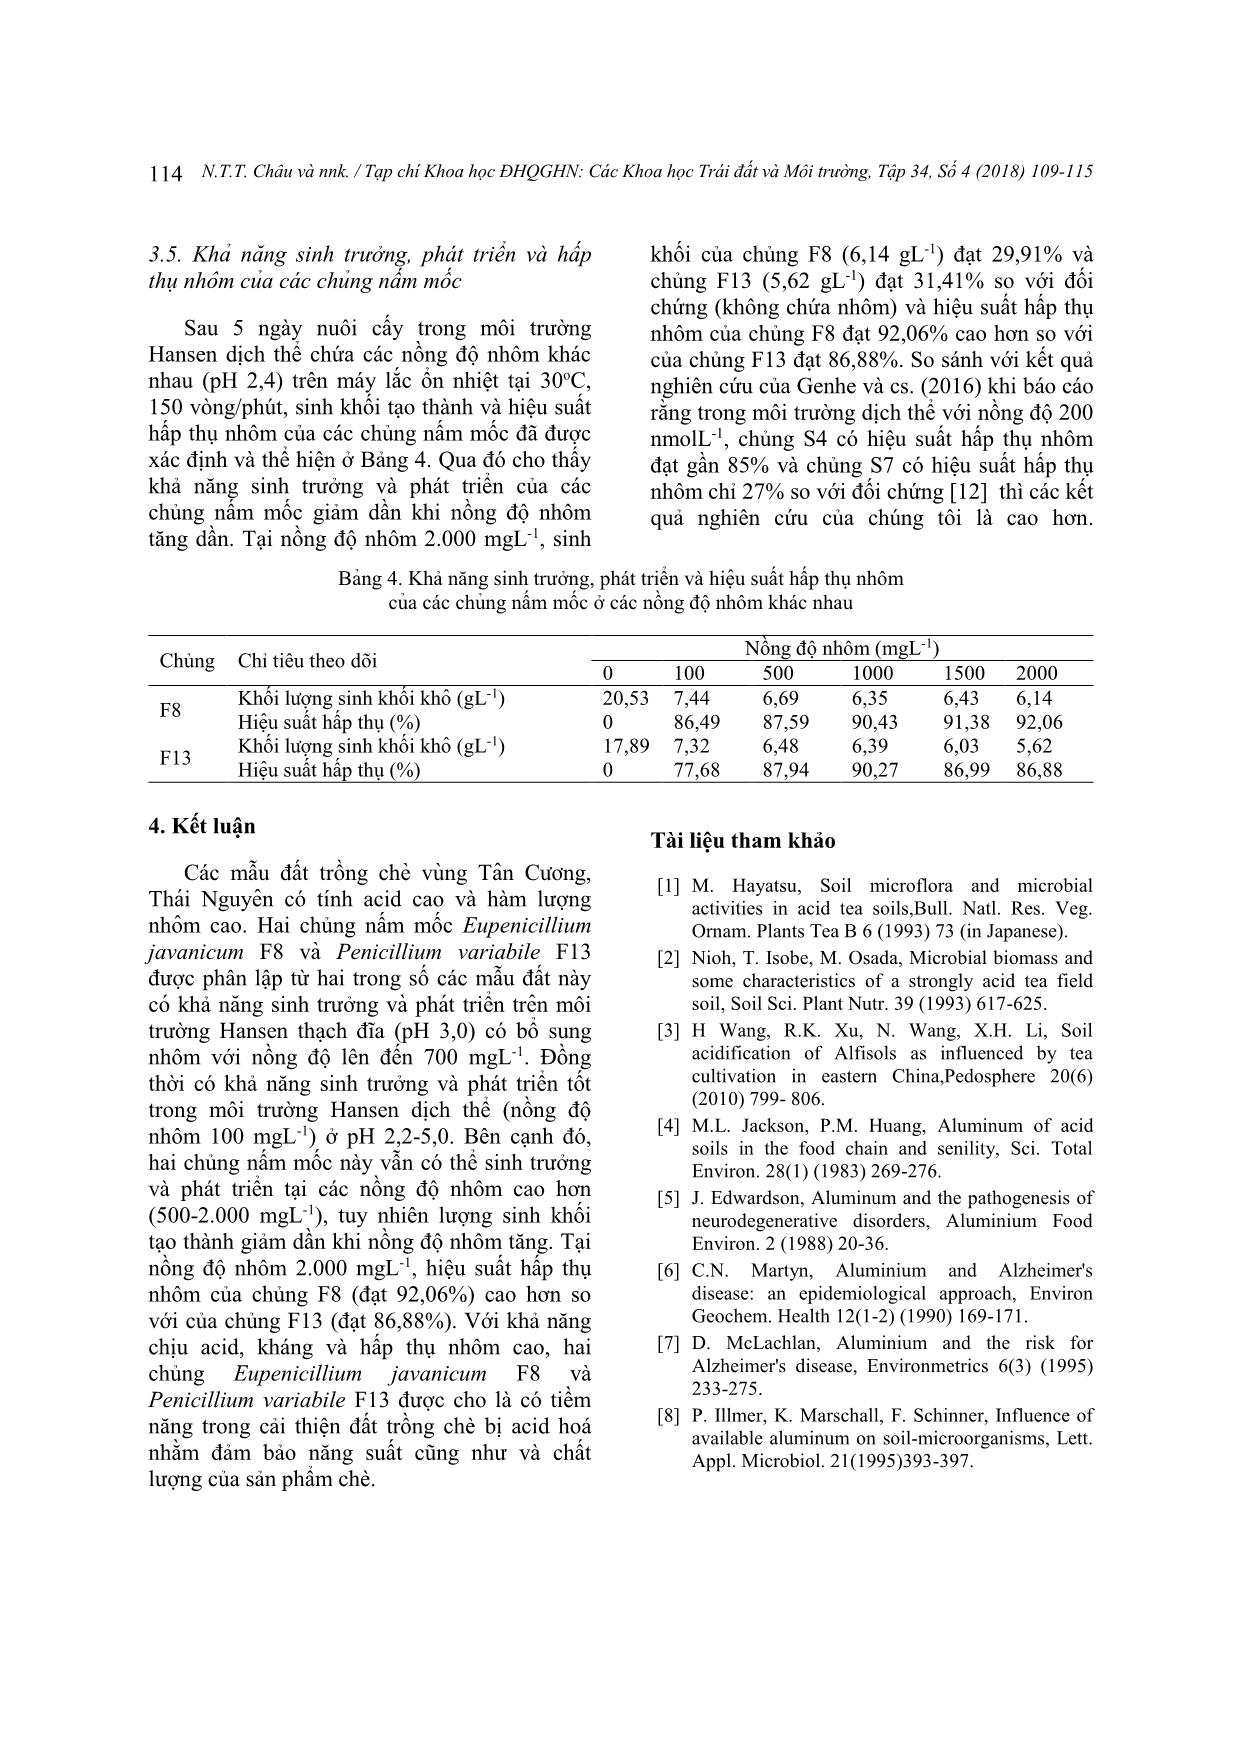 Khả năng chịu acid, kháng và hấp thụ nhôm của nấm mốc phân lập từ đất trồng chè vùng Tân Cương, Thái Nguyên trang 6